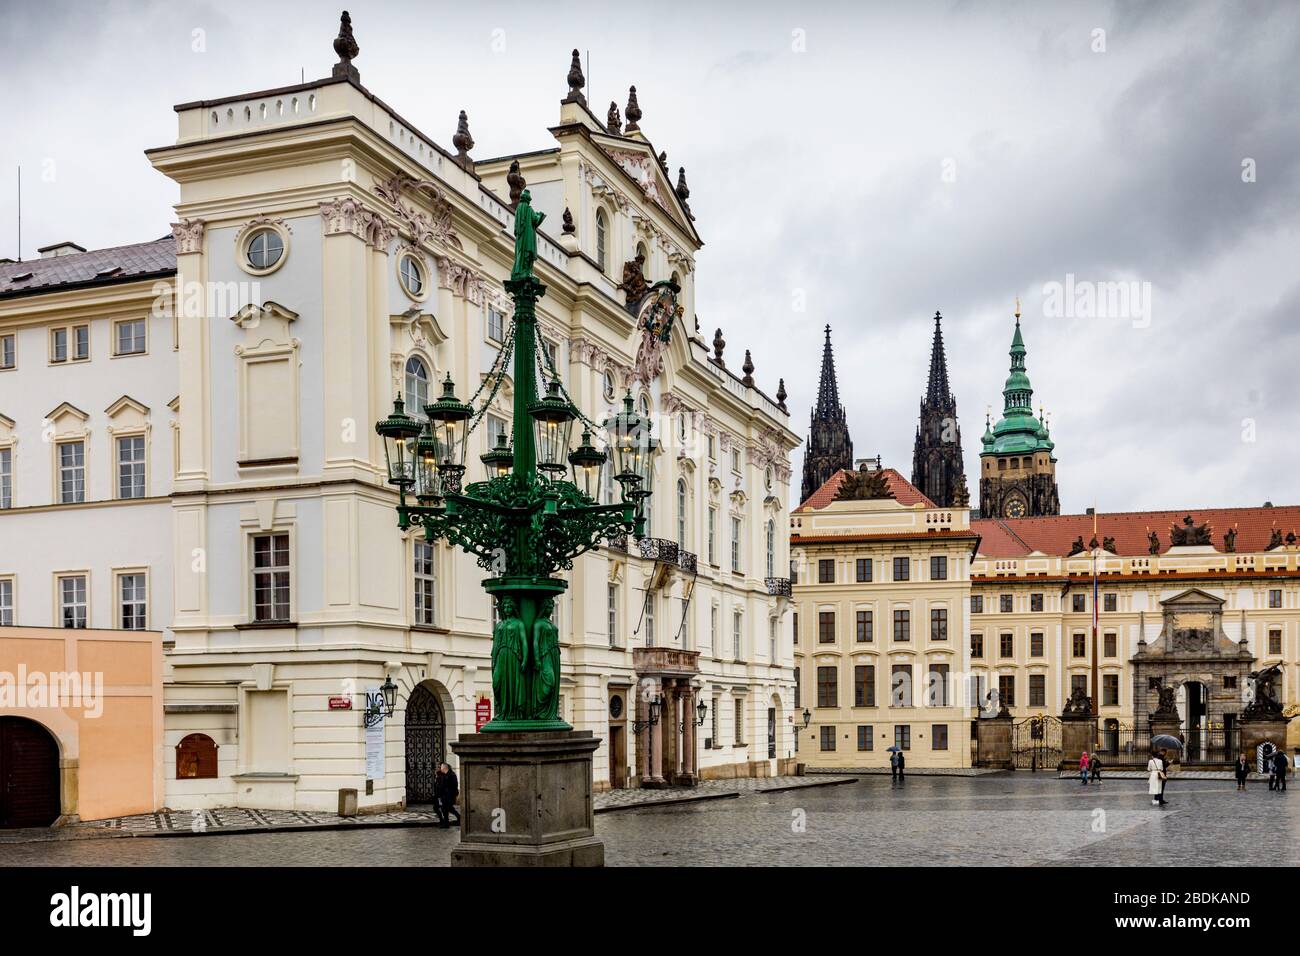 Farola de estilo Art Nouveau en la plaza Hradcany, el castillo de Praga, Patrimonio de la Humanidad de la UNESCO, República Checa, Europa Foto de stock